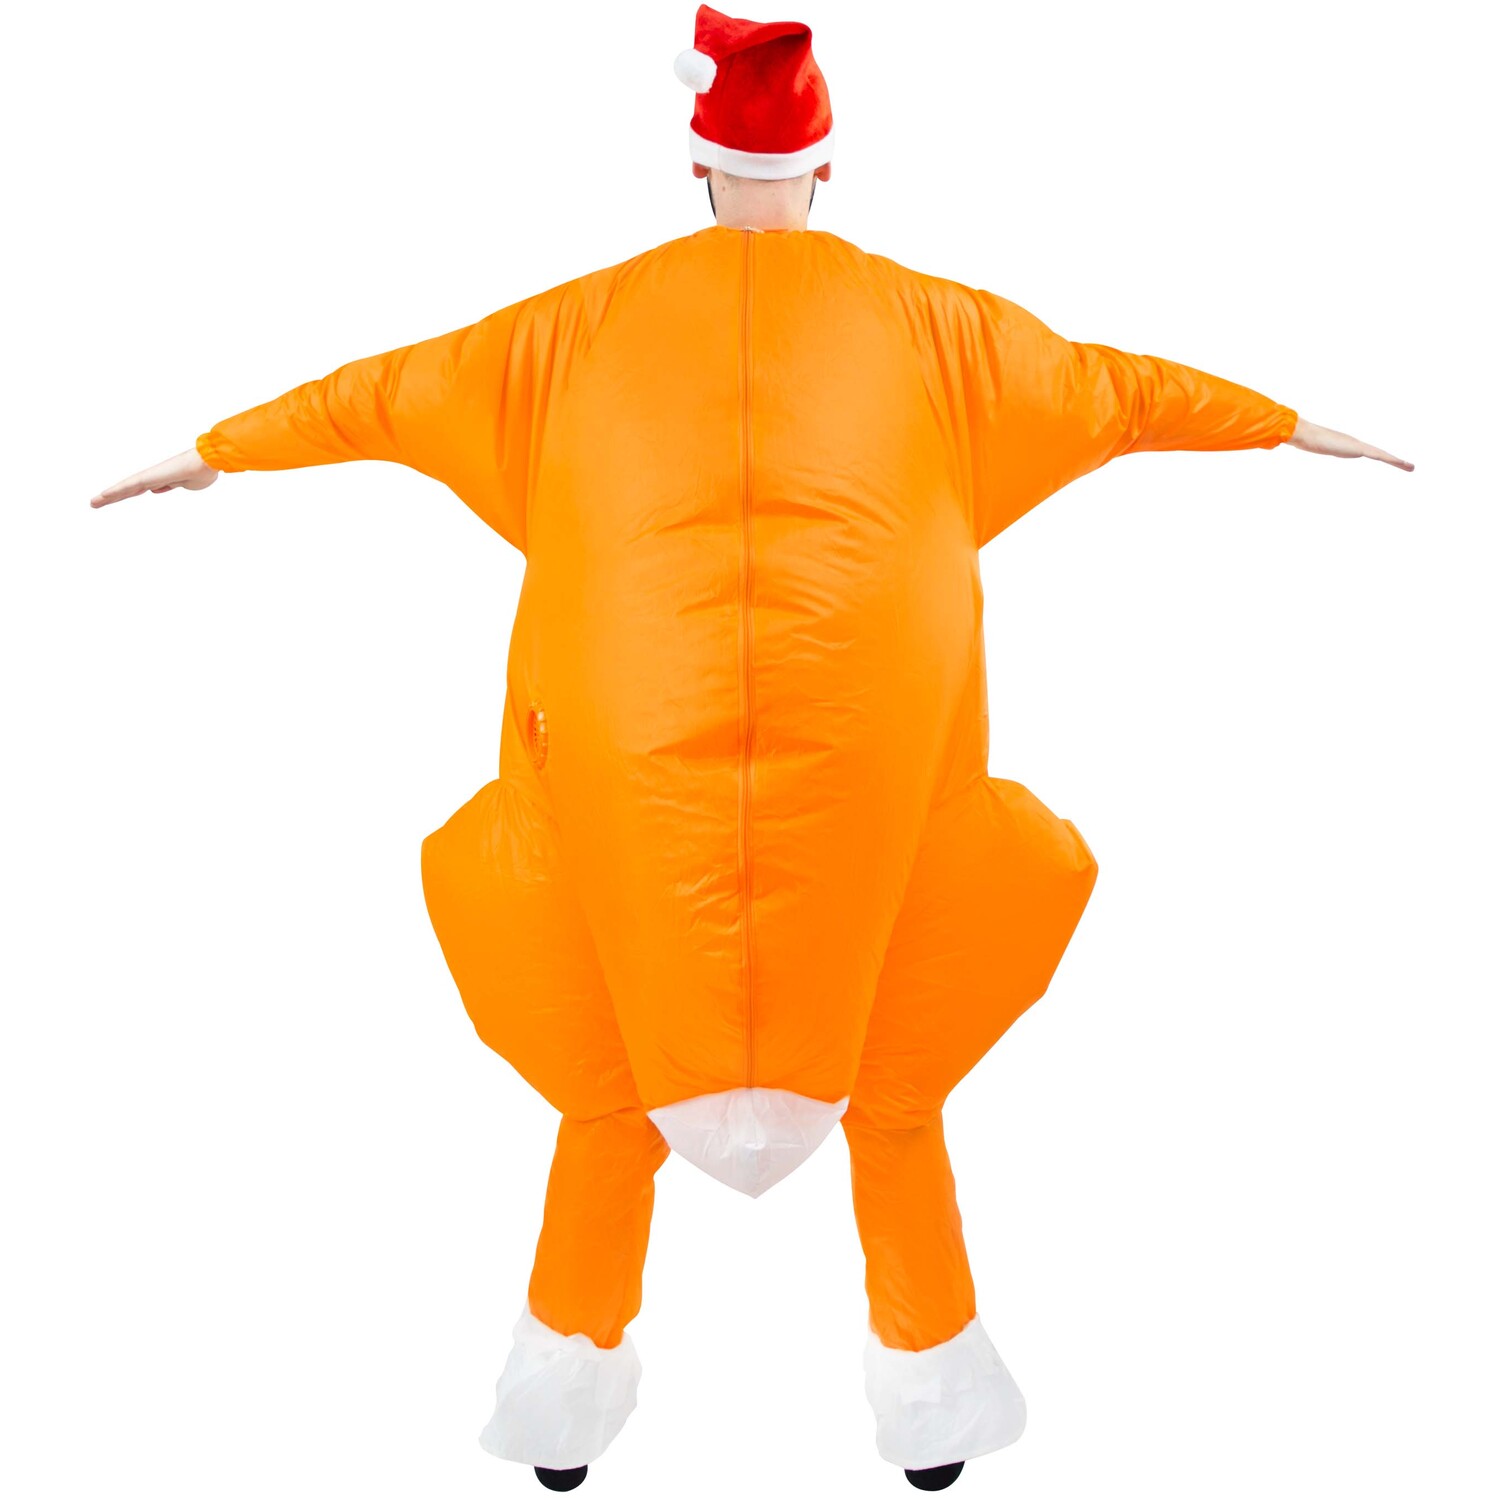 Roasted Turkey Inflatable Costume Image 2